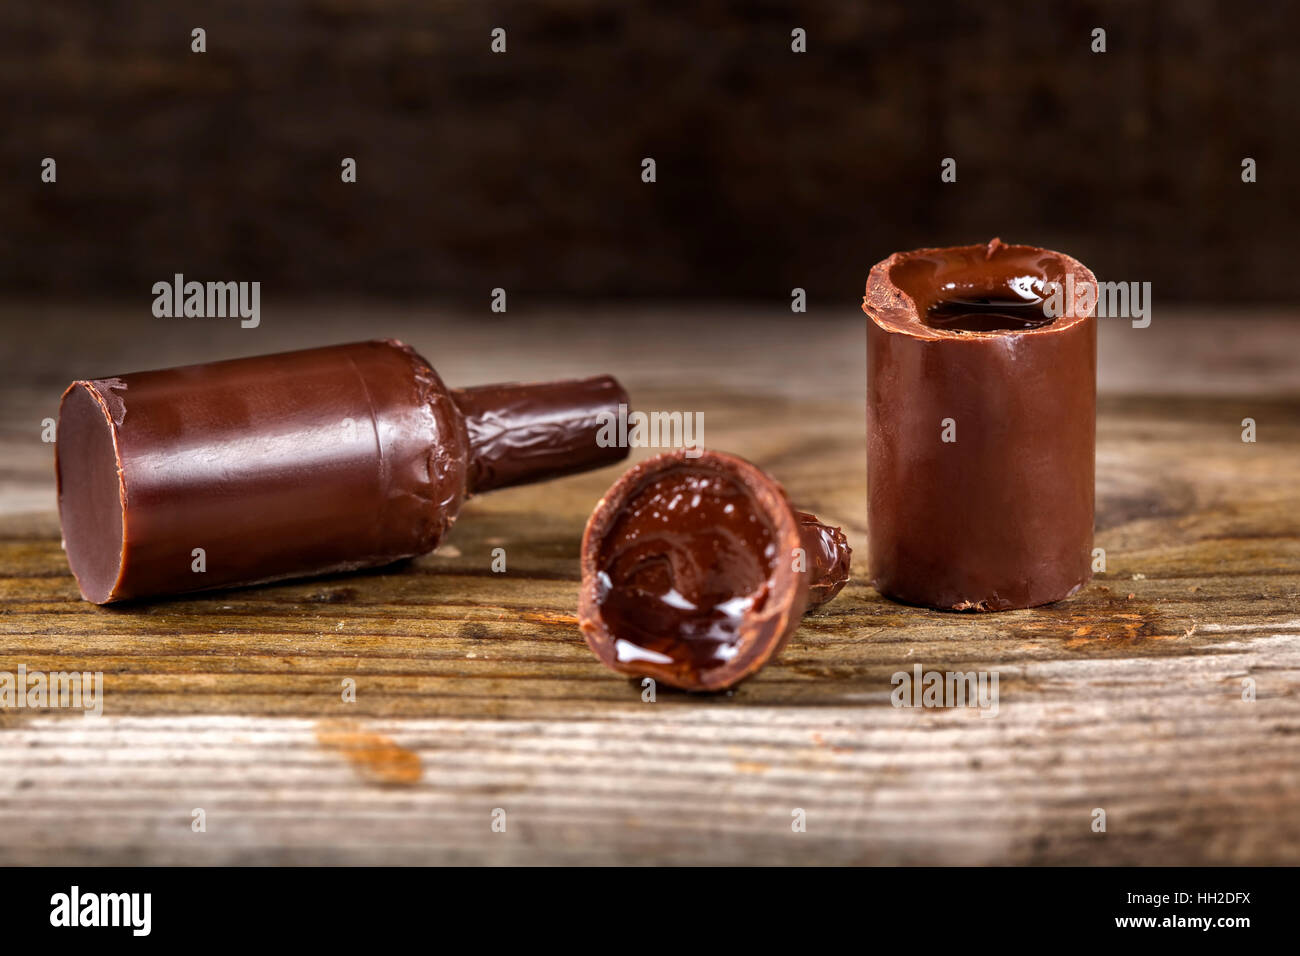 Dulces de Chocolate en forma de botella llena de sabores licor sobre fondo de madera Foto de stock